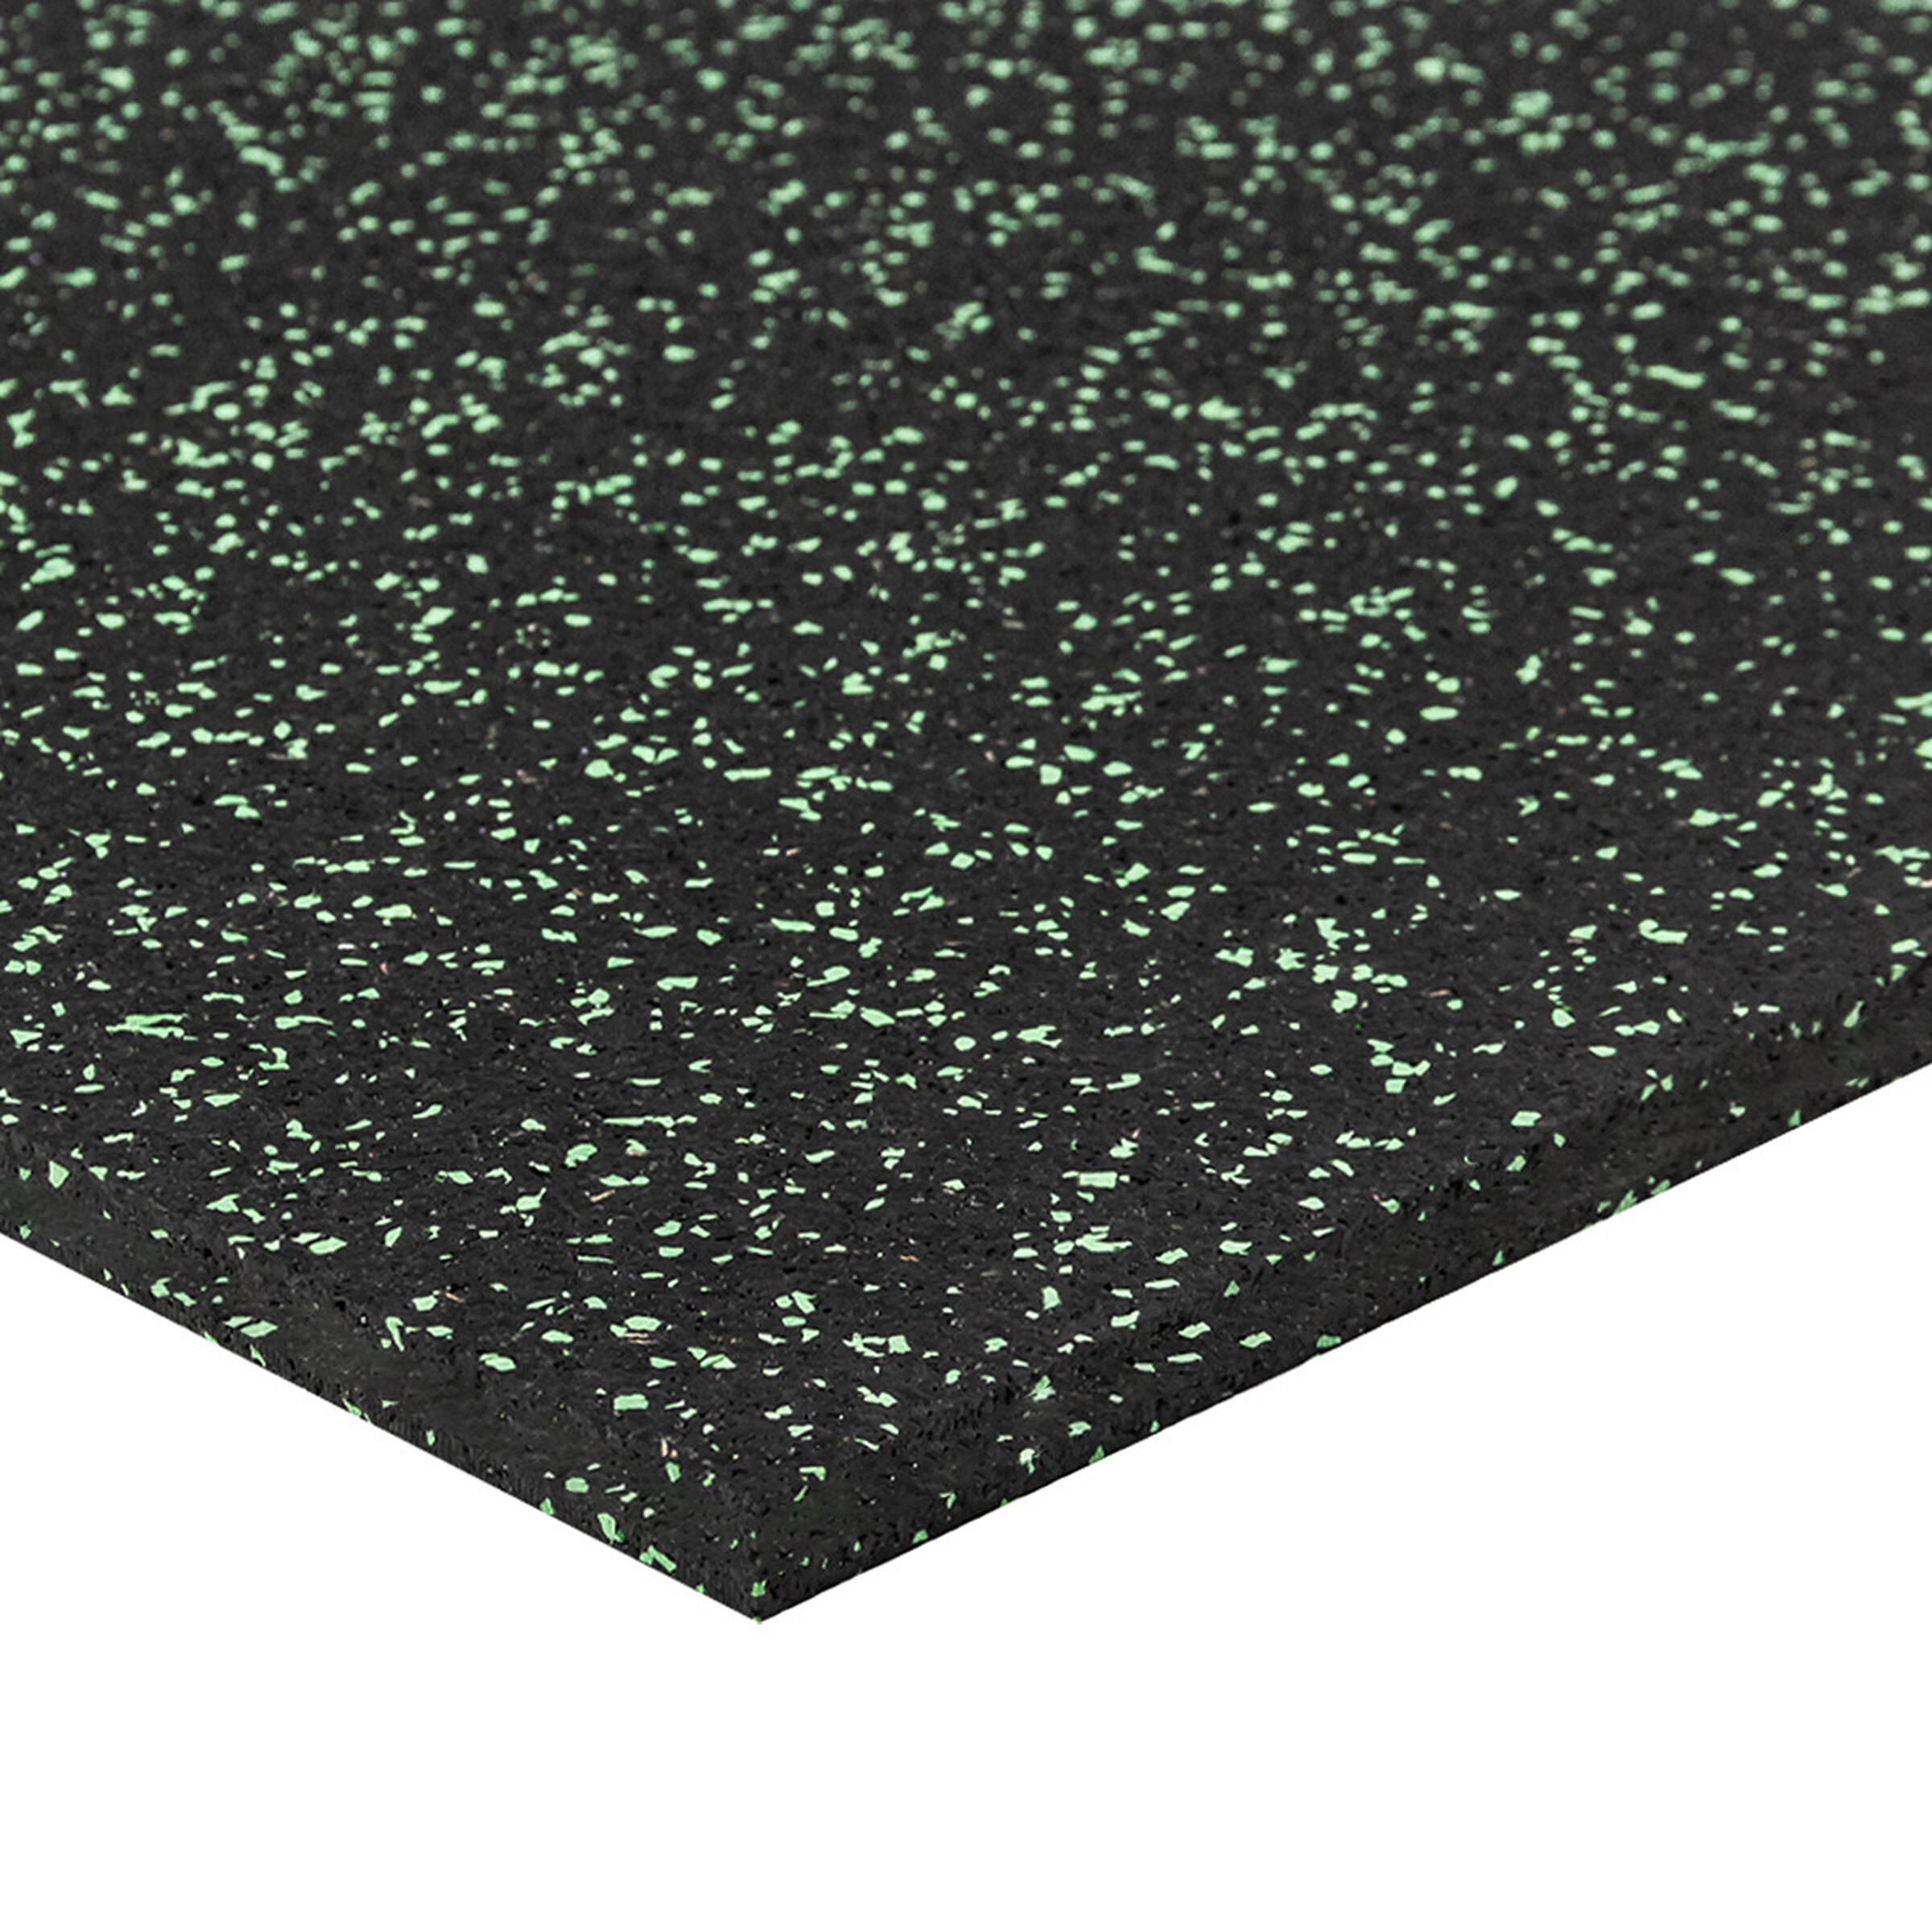 Čierno-zelená gumová modulová puzzle dlažba (roh) FLOMA FitFlo SF1050 - dĺžka 50 cm, šírka 50 cm, výška 1,6 cm